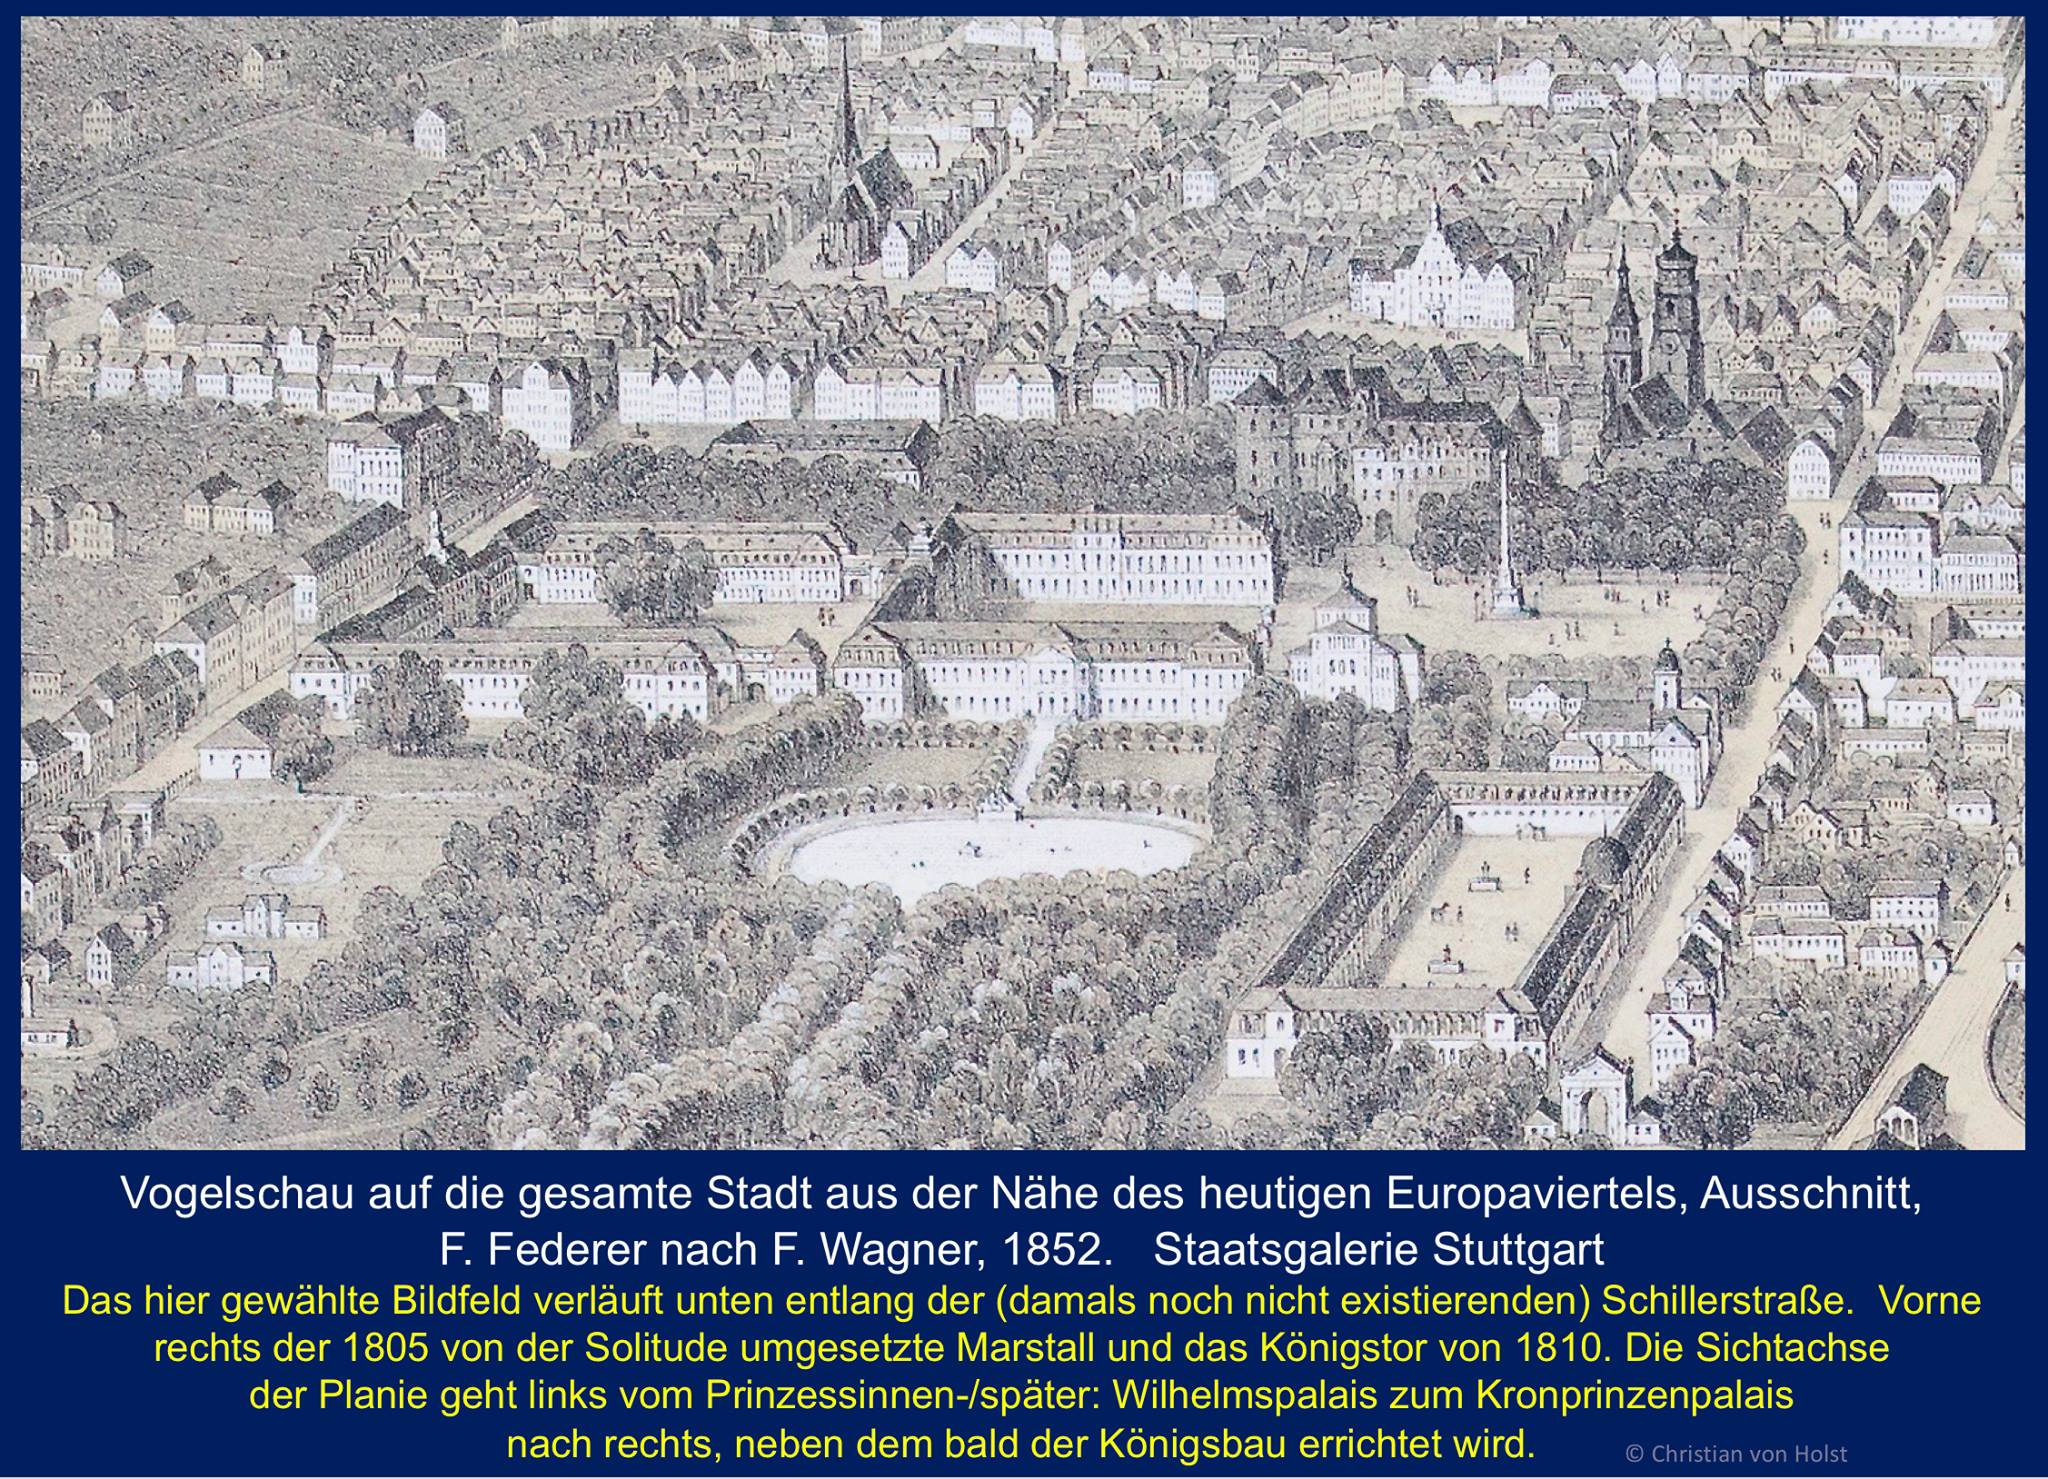 Vogelschau von 1852: Planie - Scharnier zwischen Schlossareal und Stadtkern